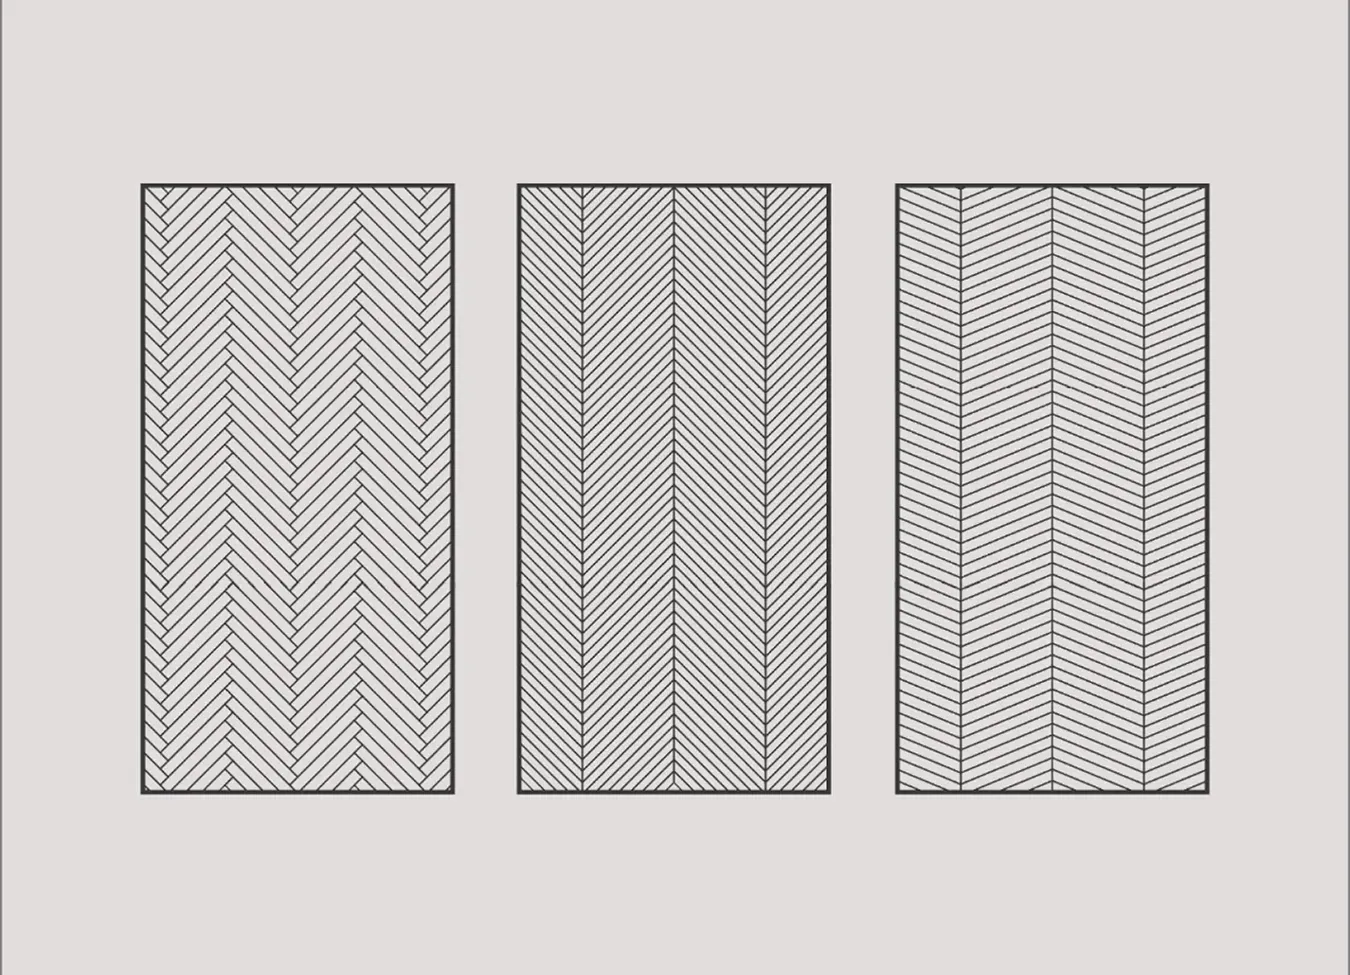 Diferencias entre los patrones de parquet espiga italiano, húngaro y francés, destacando los ángulos y configuraciones únicos.